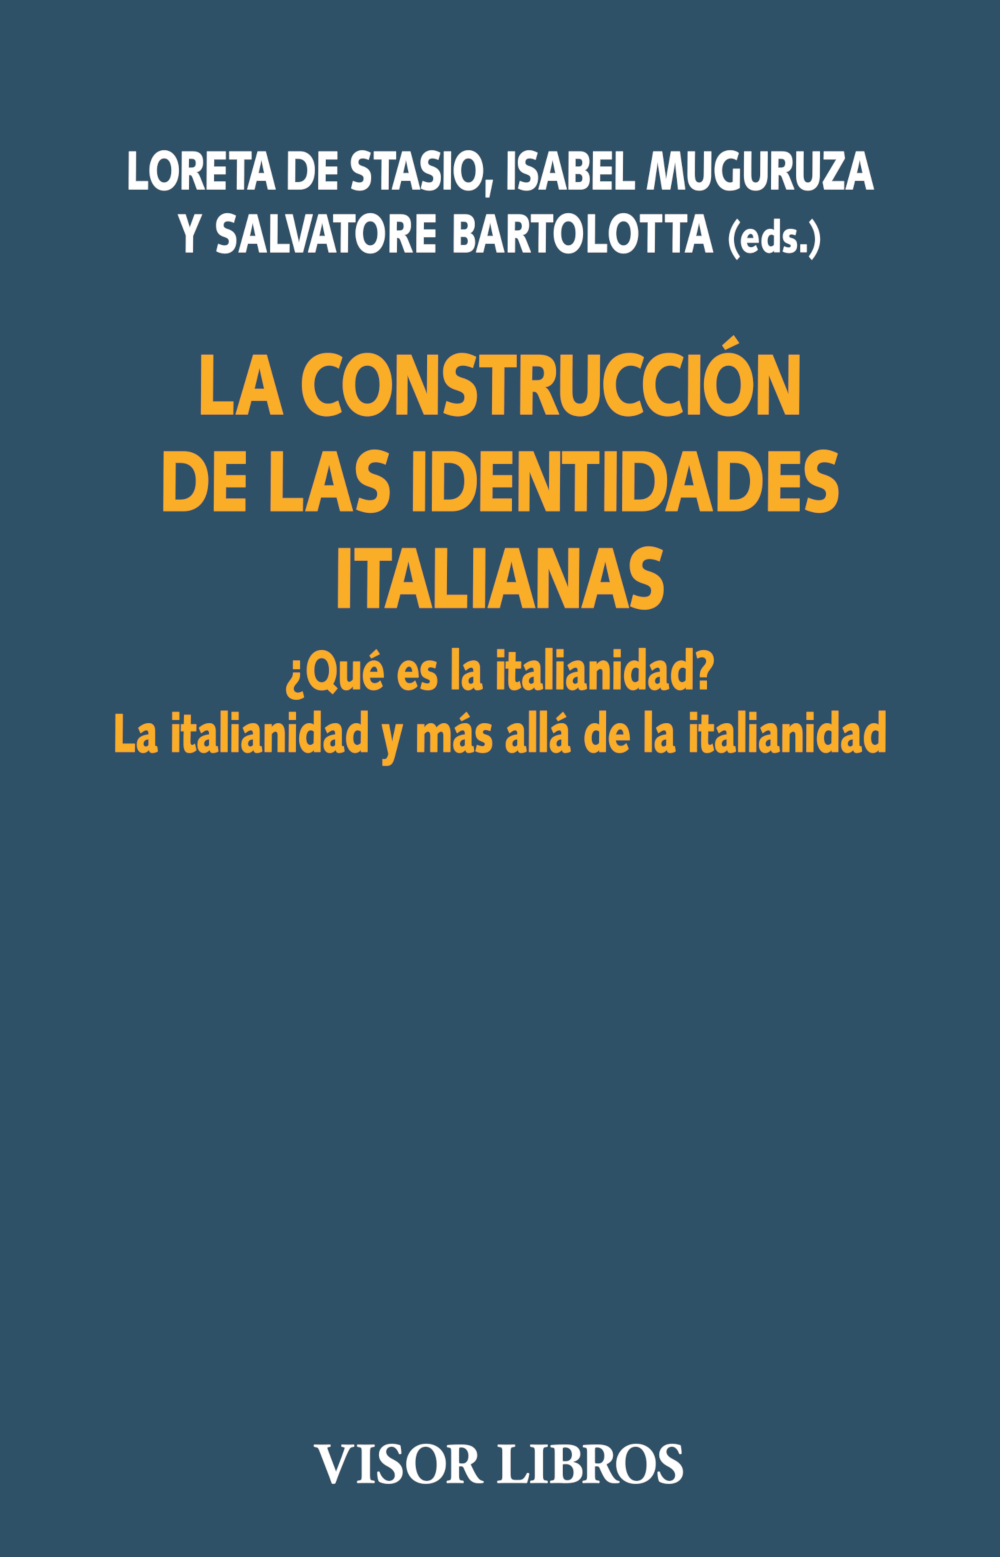 Imagen de portada del libro La construcción de las identidades italianas